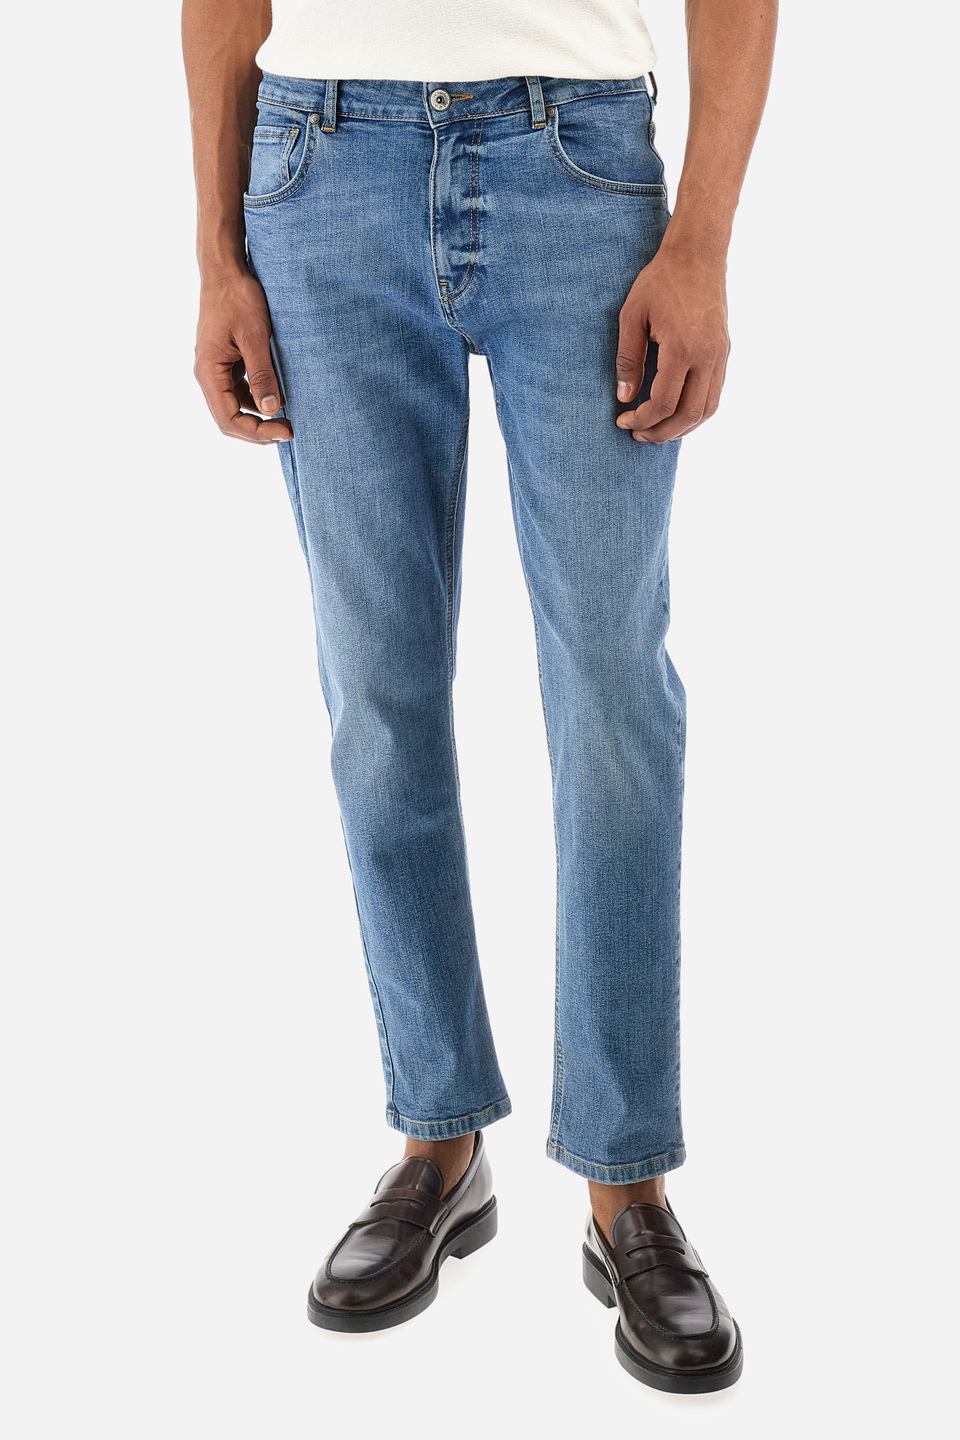 Traditional Fit 5-Pocket Denim Jeans for Men